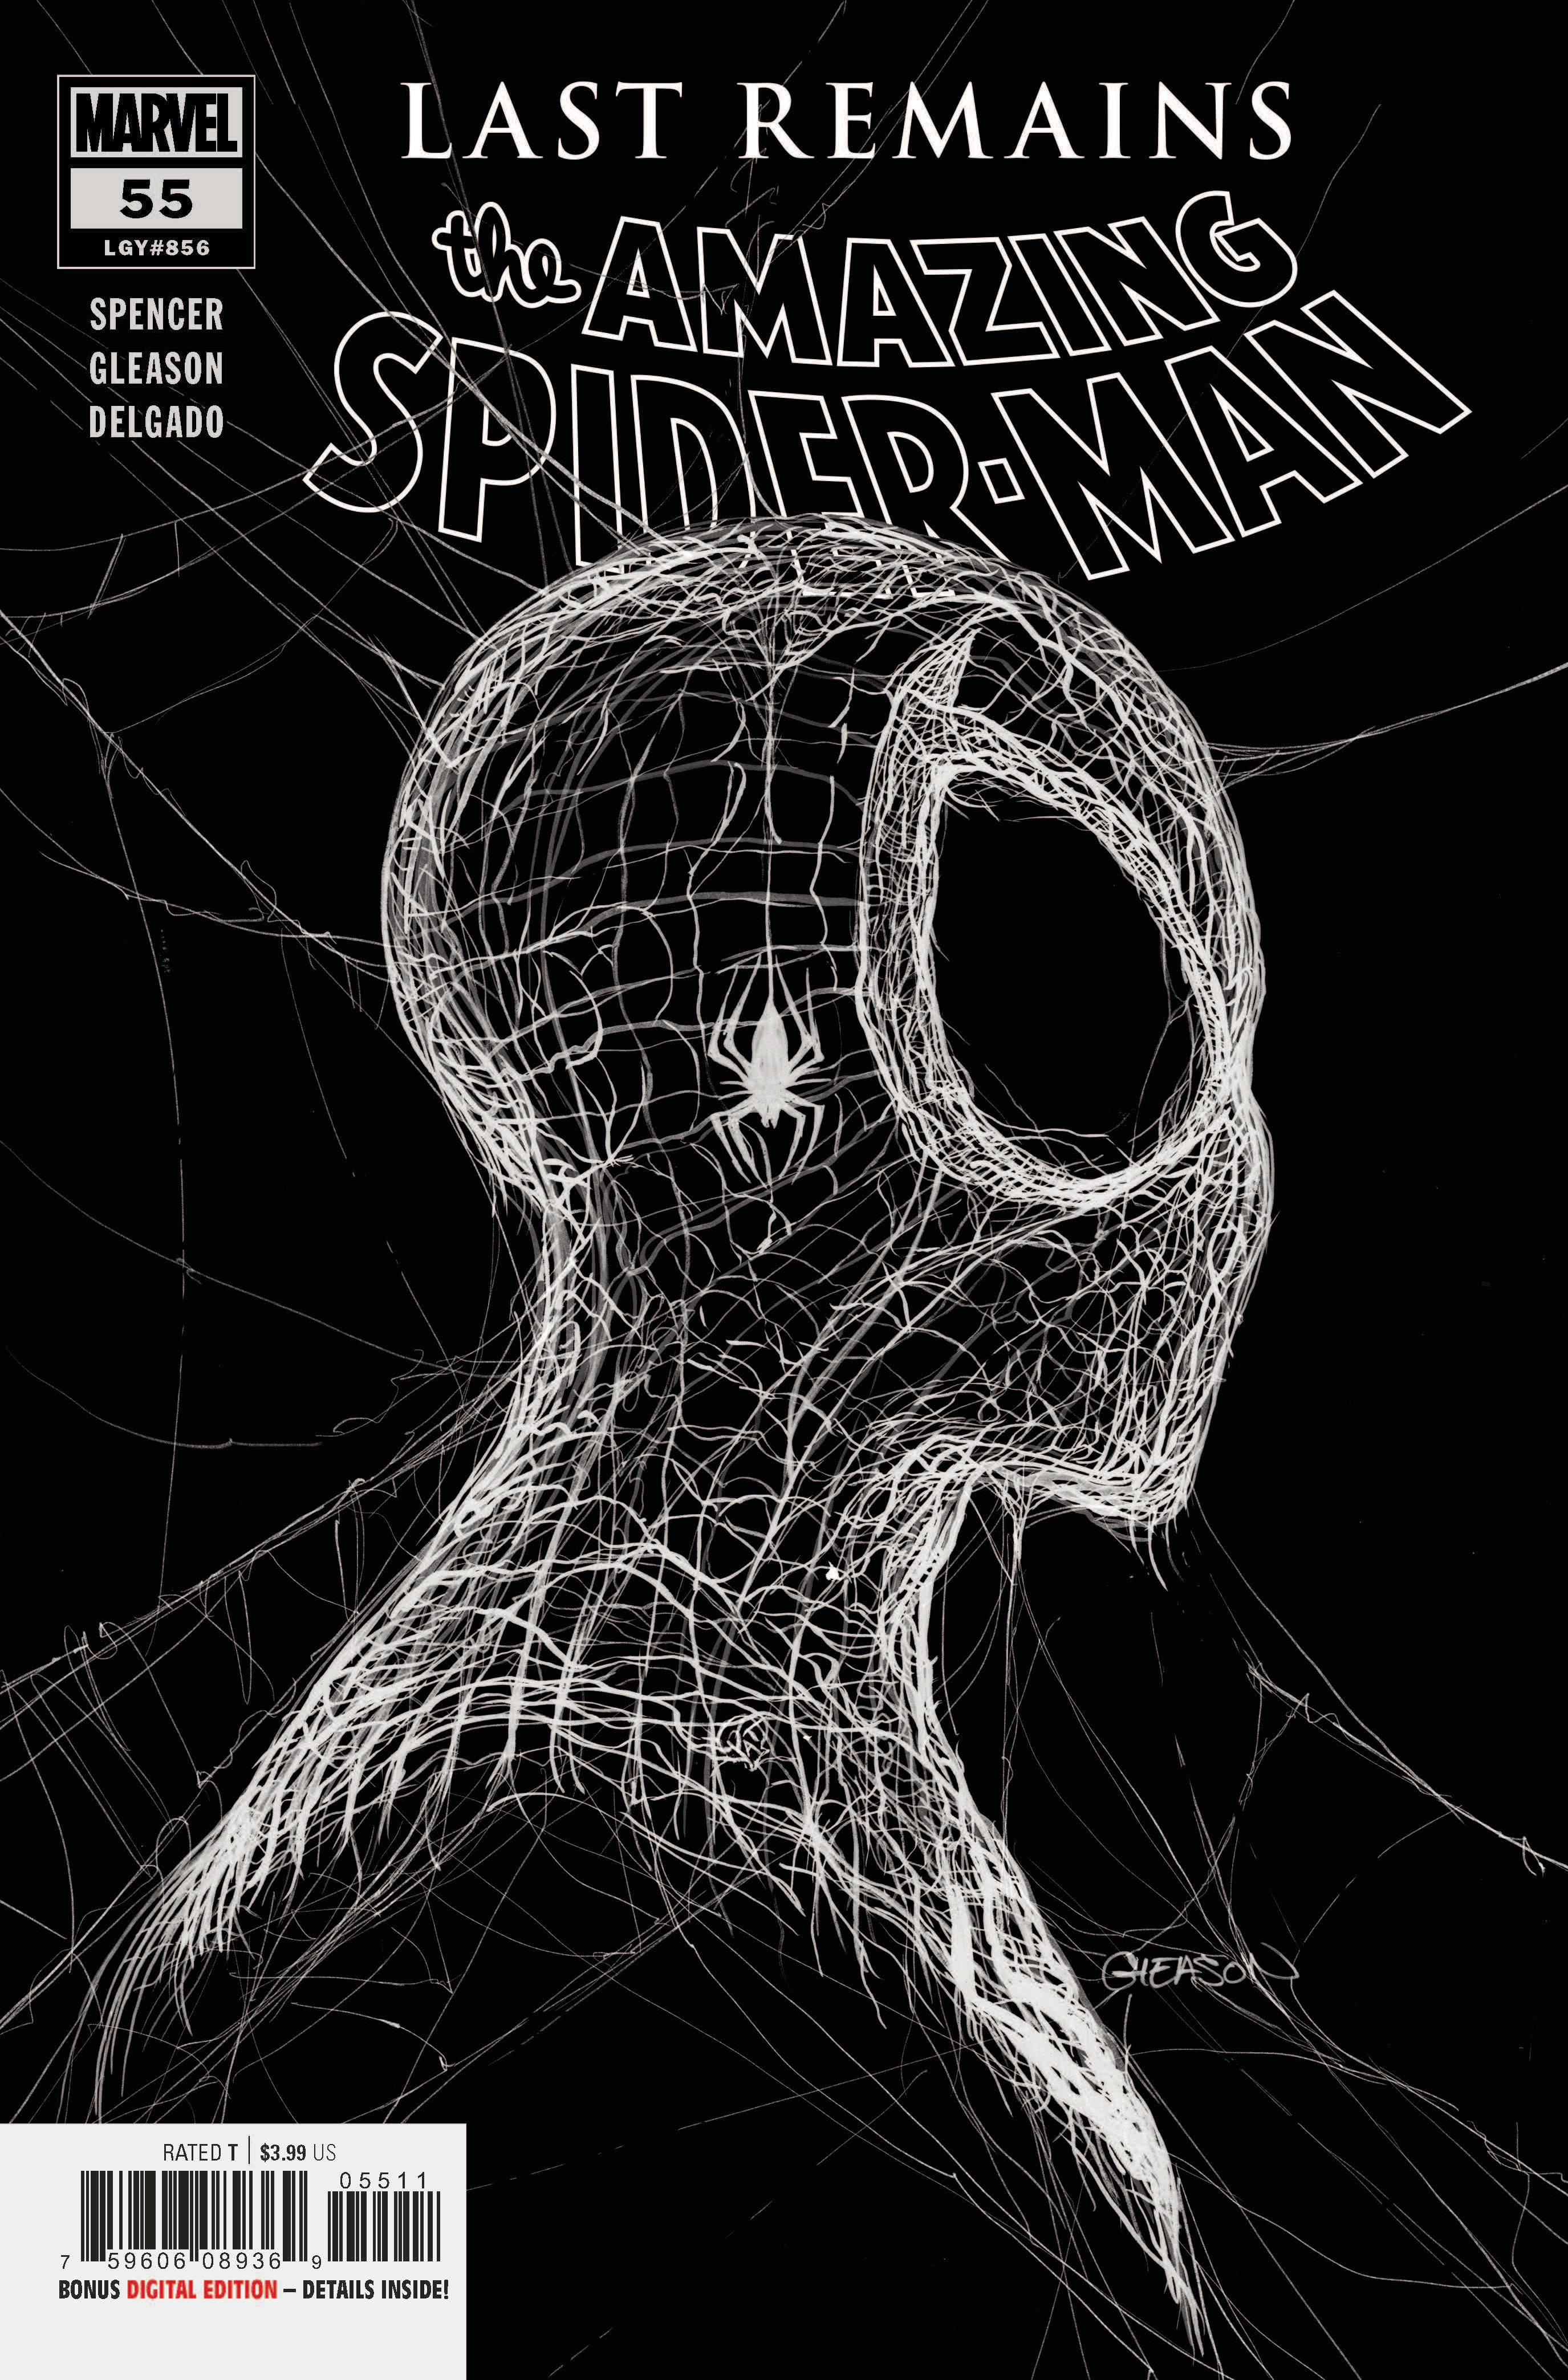 AMAZING SPIDER-MAN #55 LR | Game Master's Emporium (The New GME)